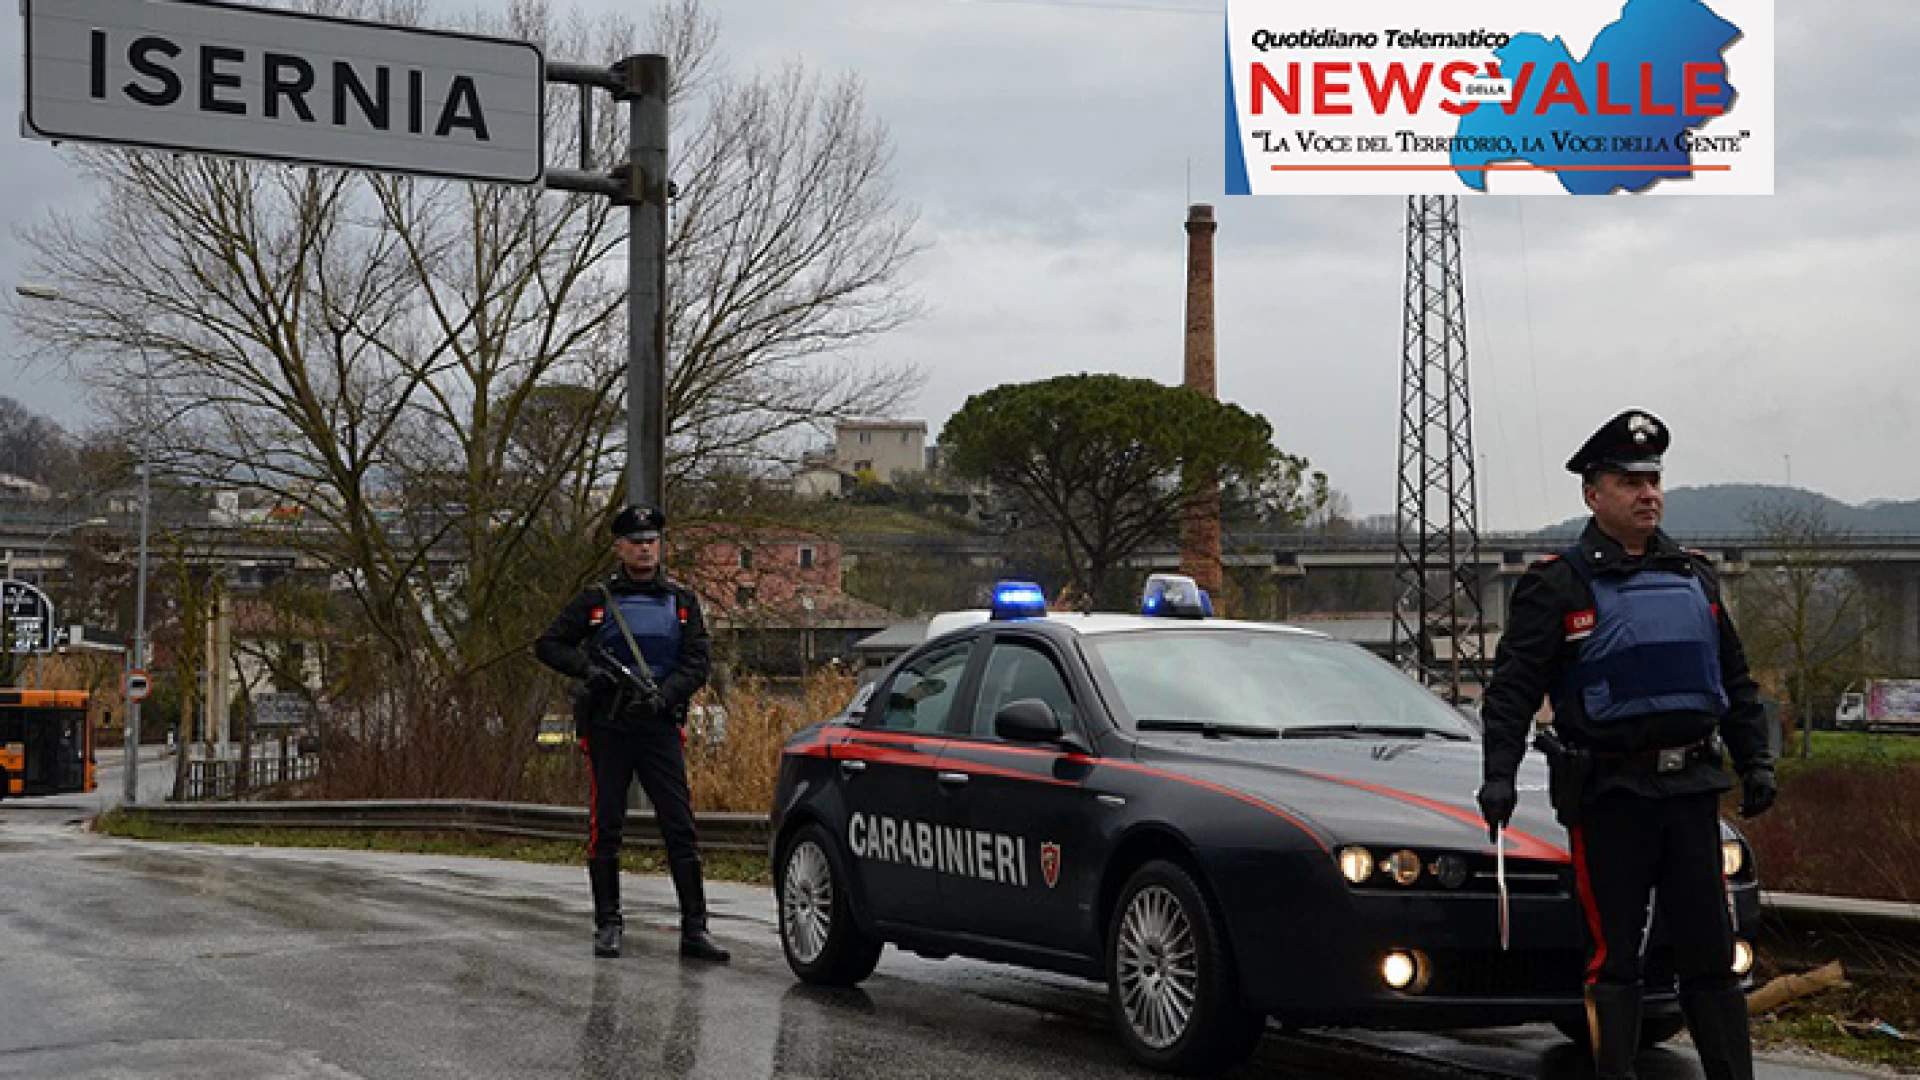 Isernia: Operazione “Periferie Sicure”, raffica di denunce e sequestri da parte dei Carabinieri. Controlli nei locali pubblicità della città.